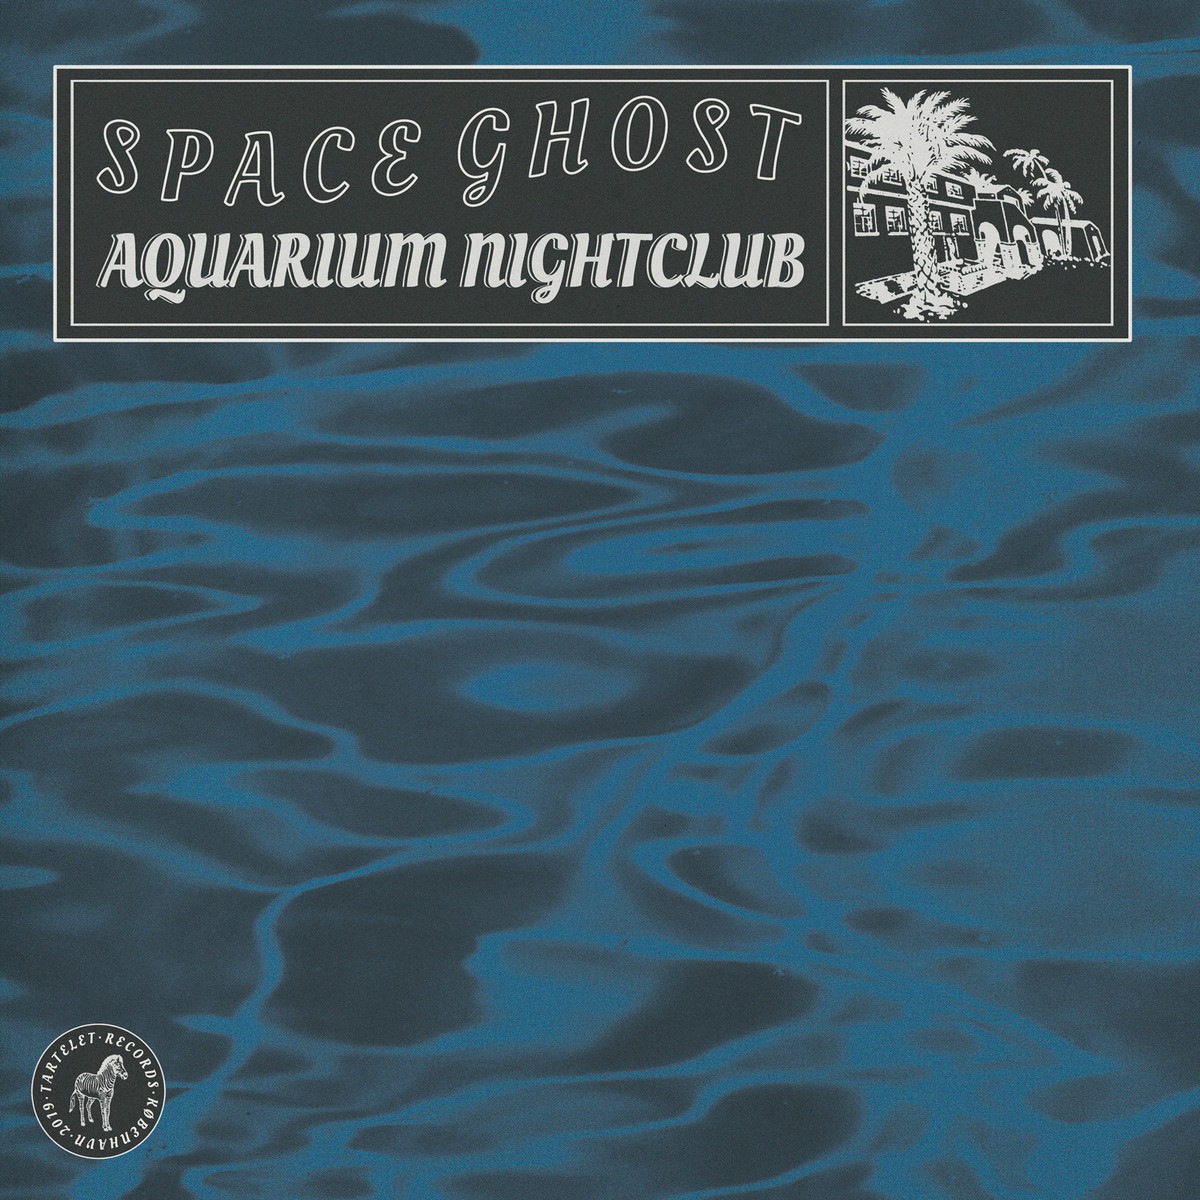 Space Ghost - Aquarium Nightclub - TARTALB011 - TARTELET RECORDS